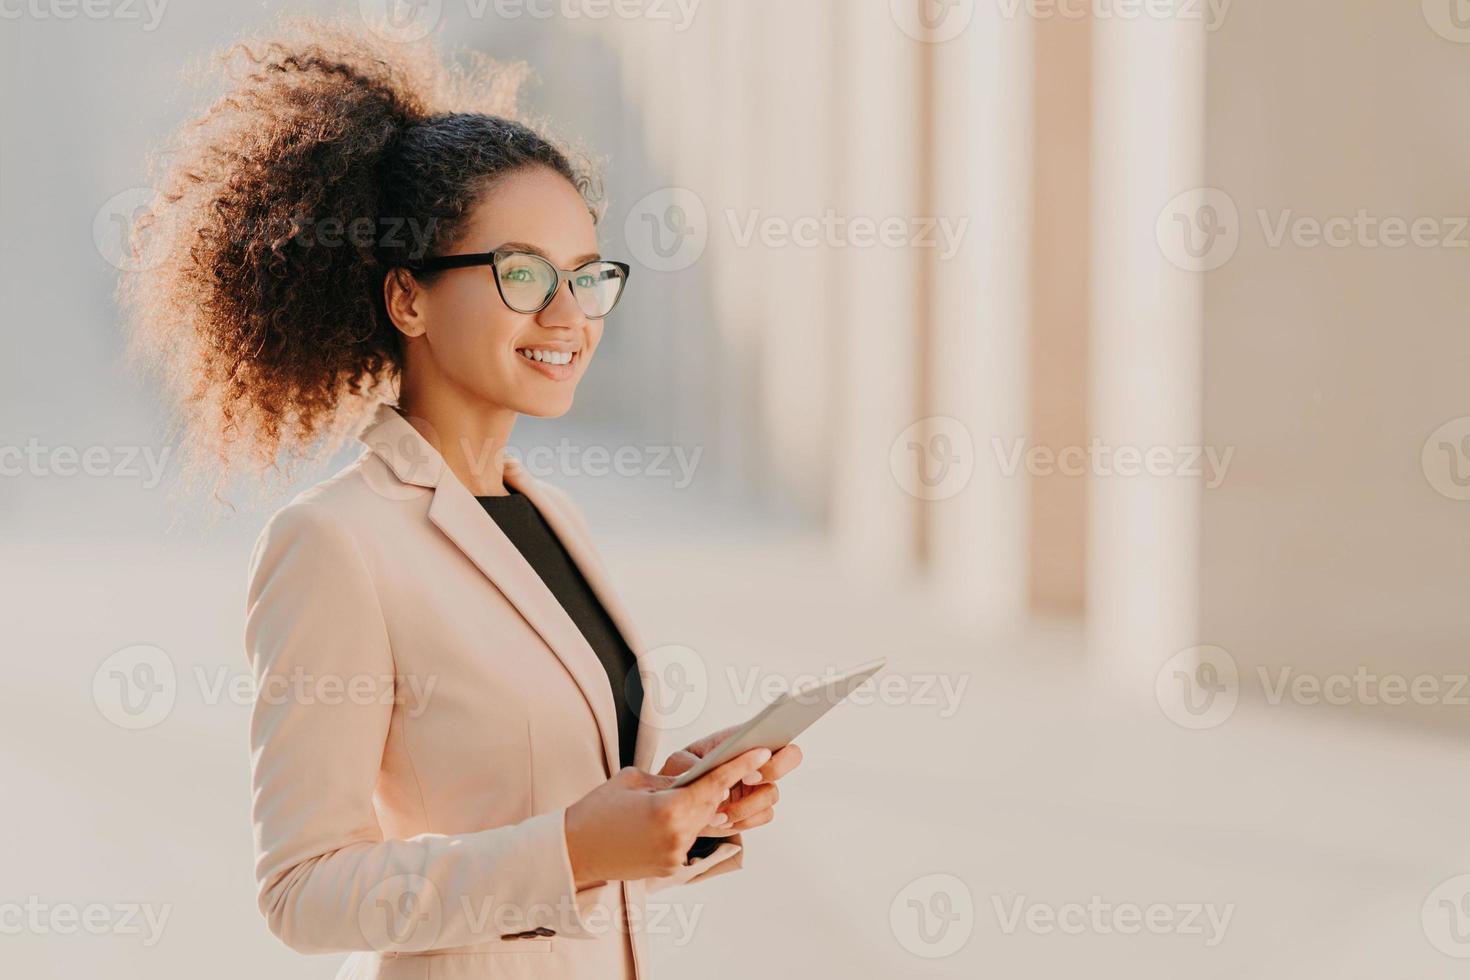 photo de profil d'une femme à la peau sombre et heureuse avec des cheveux afro, habillée avec élégance tient une tablette dans les mains se promène dans la rue porte des lunettes optiques connectées à Internet haut débit. mode de vie, technologie